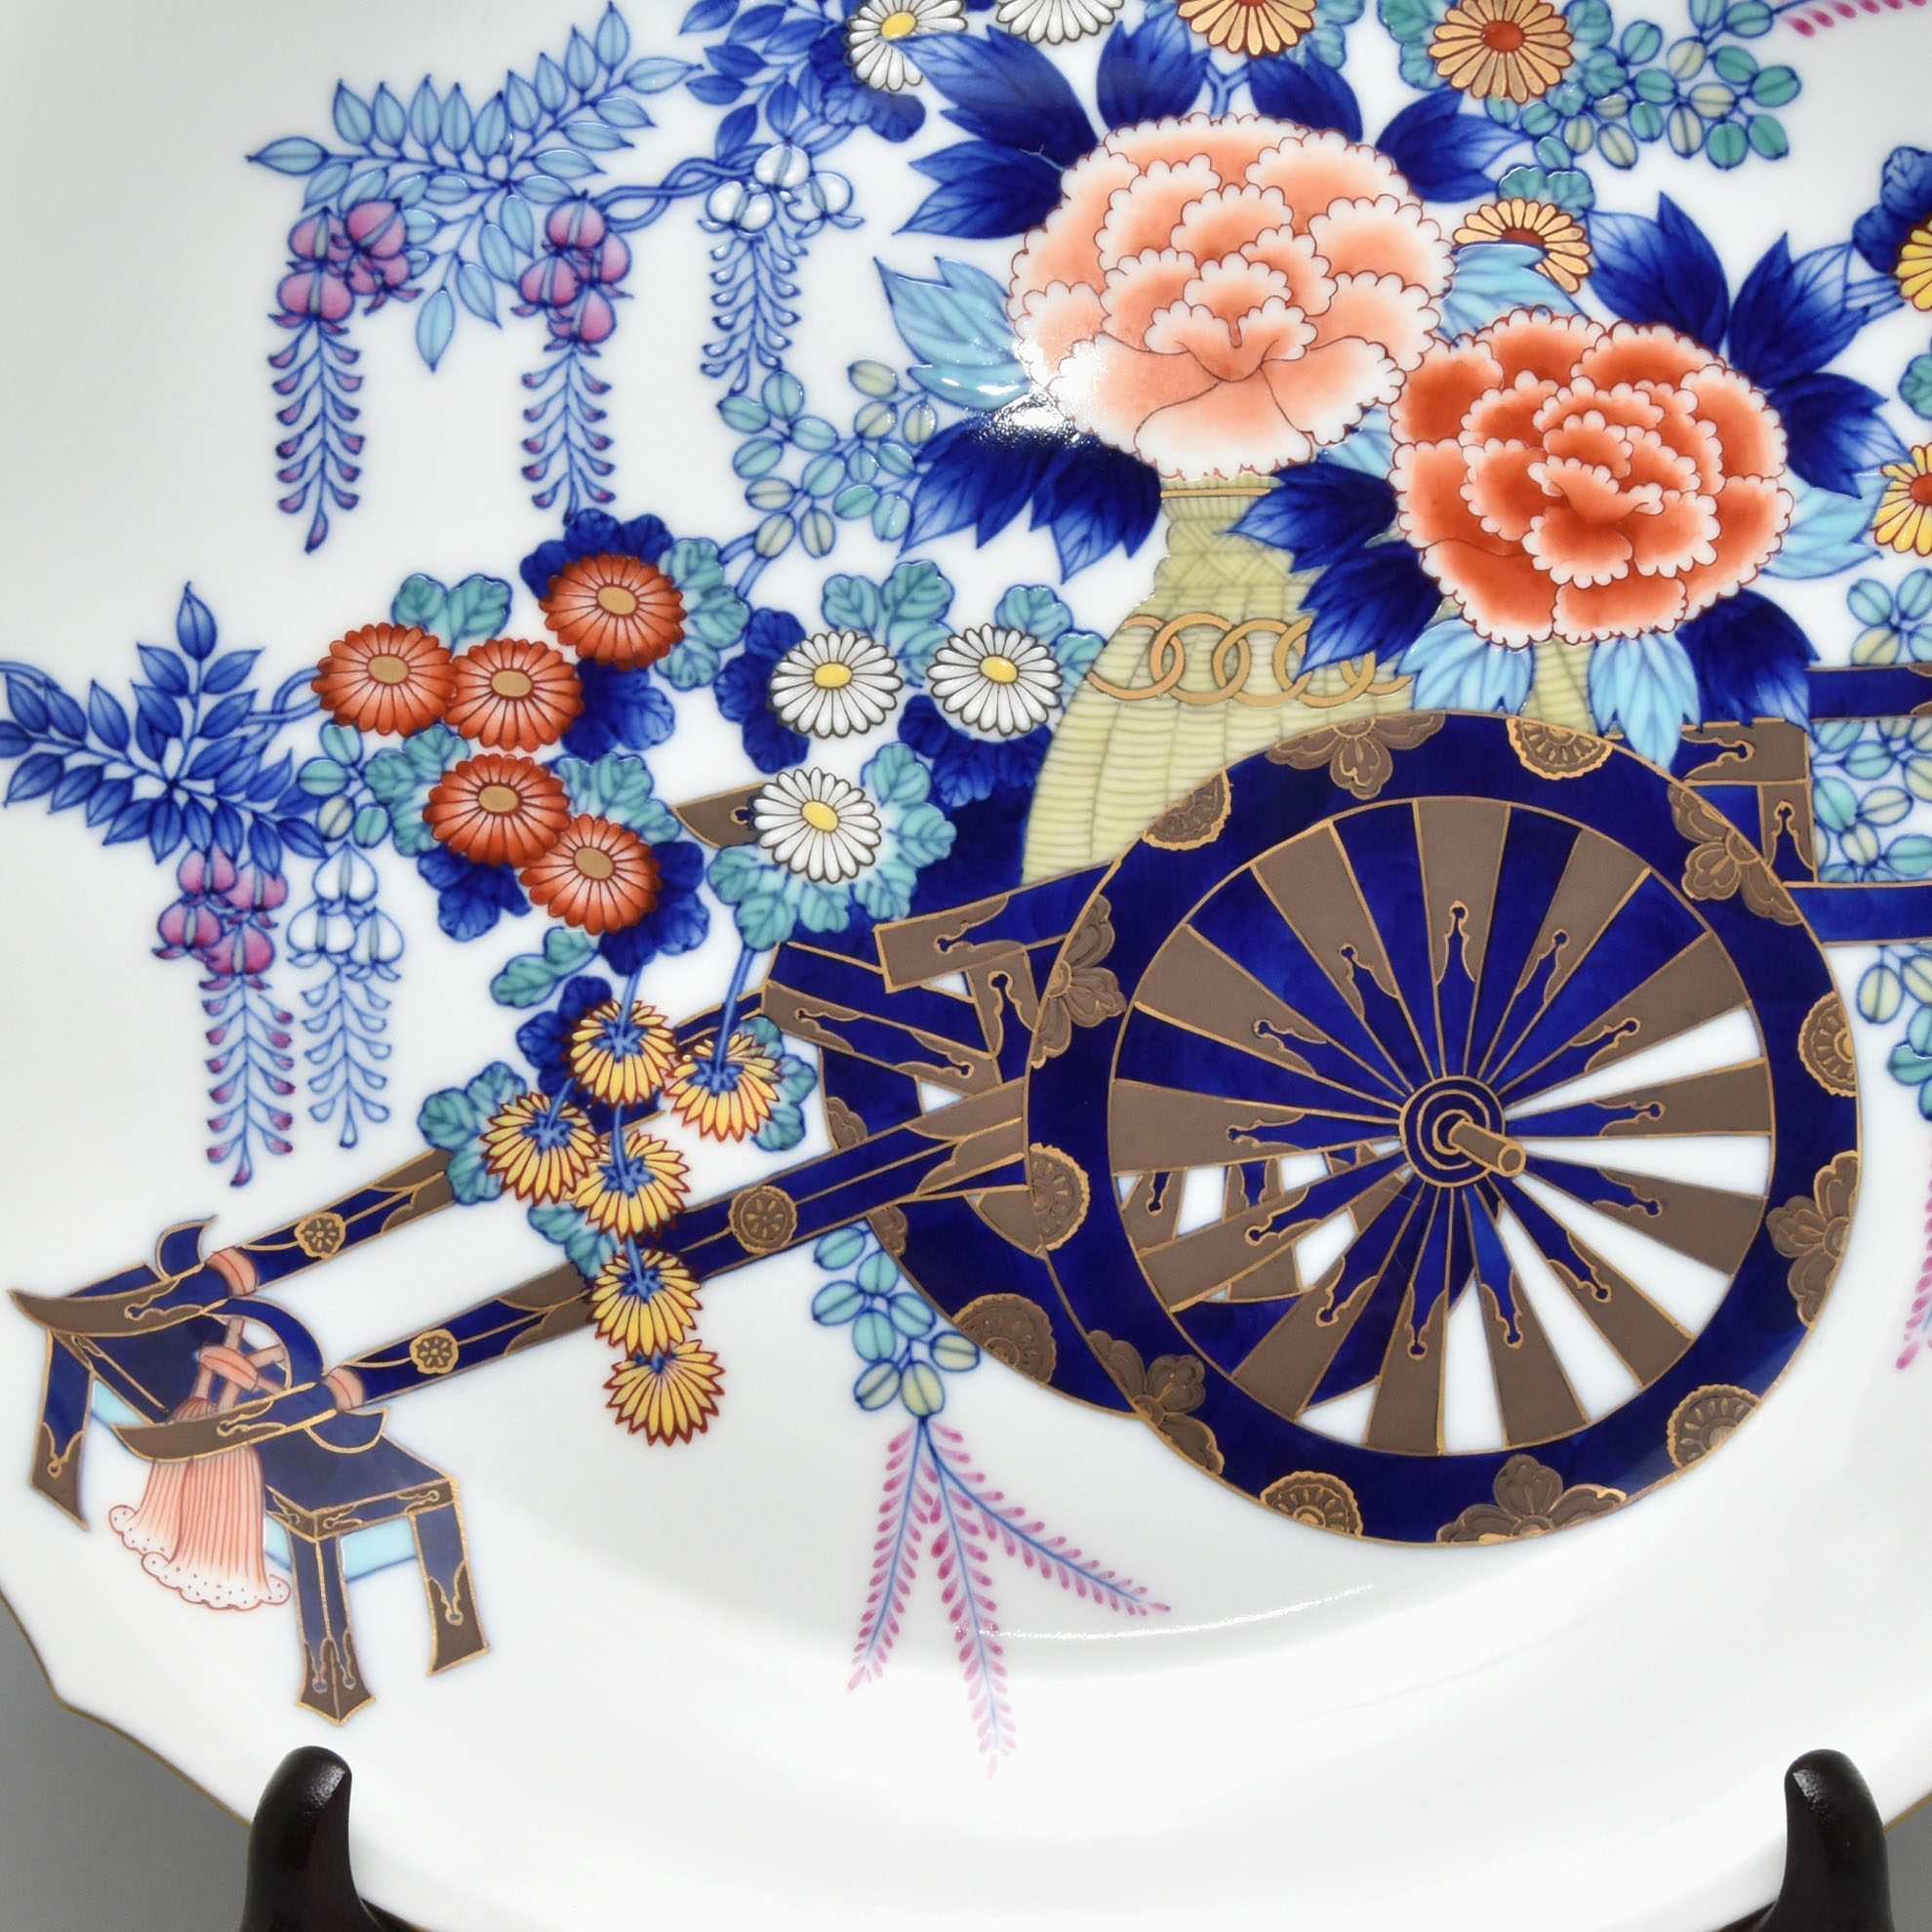 「染錦花車」の花瓶の染付の様子(参考画像)
車輪の部分を濃筆で流れるように描く
